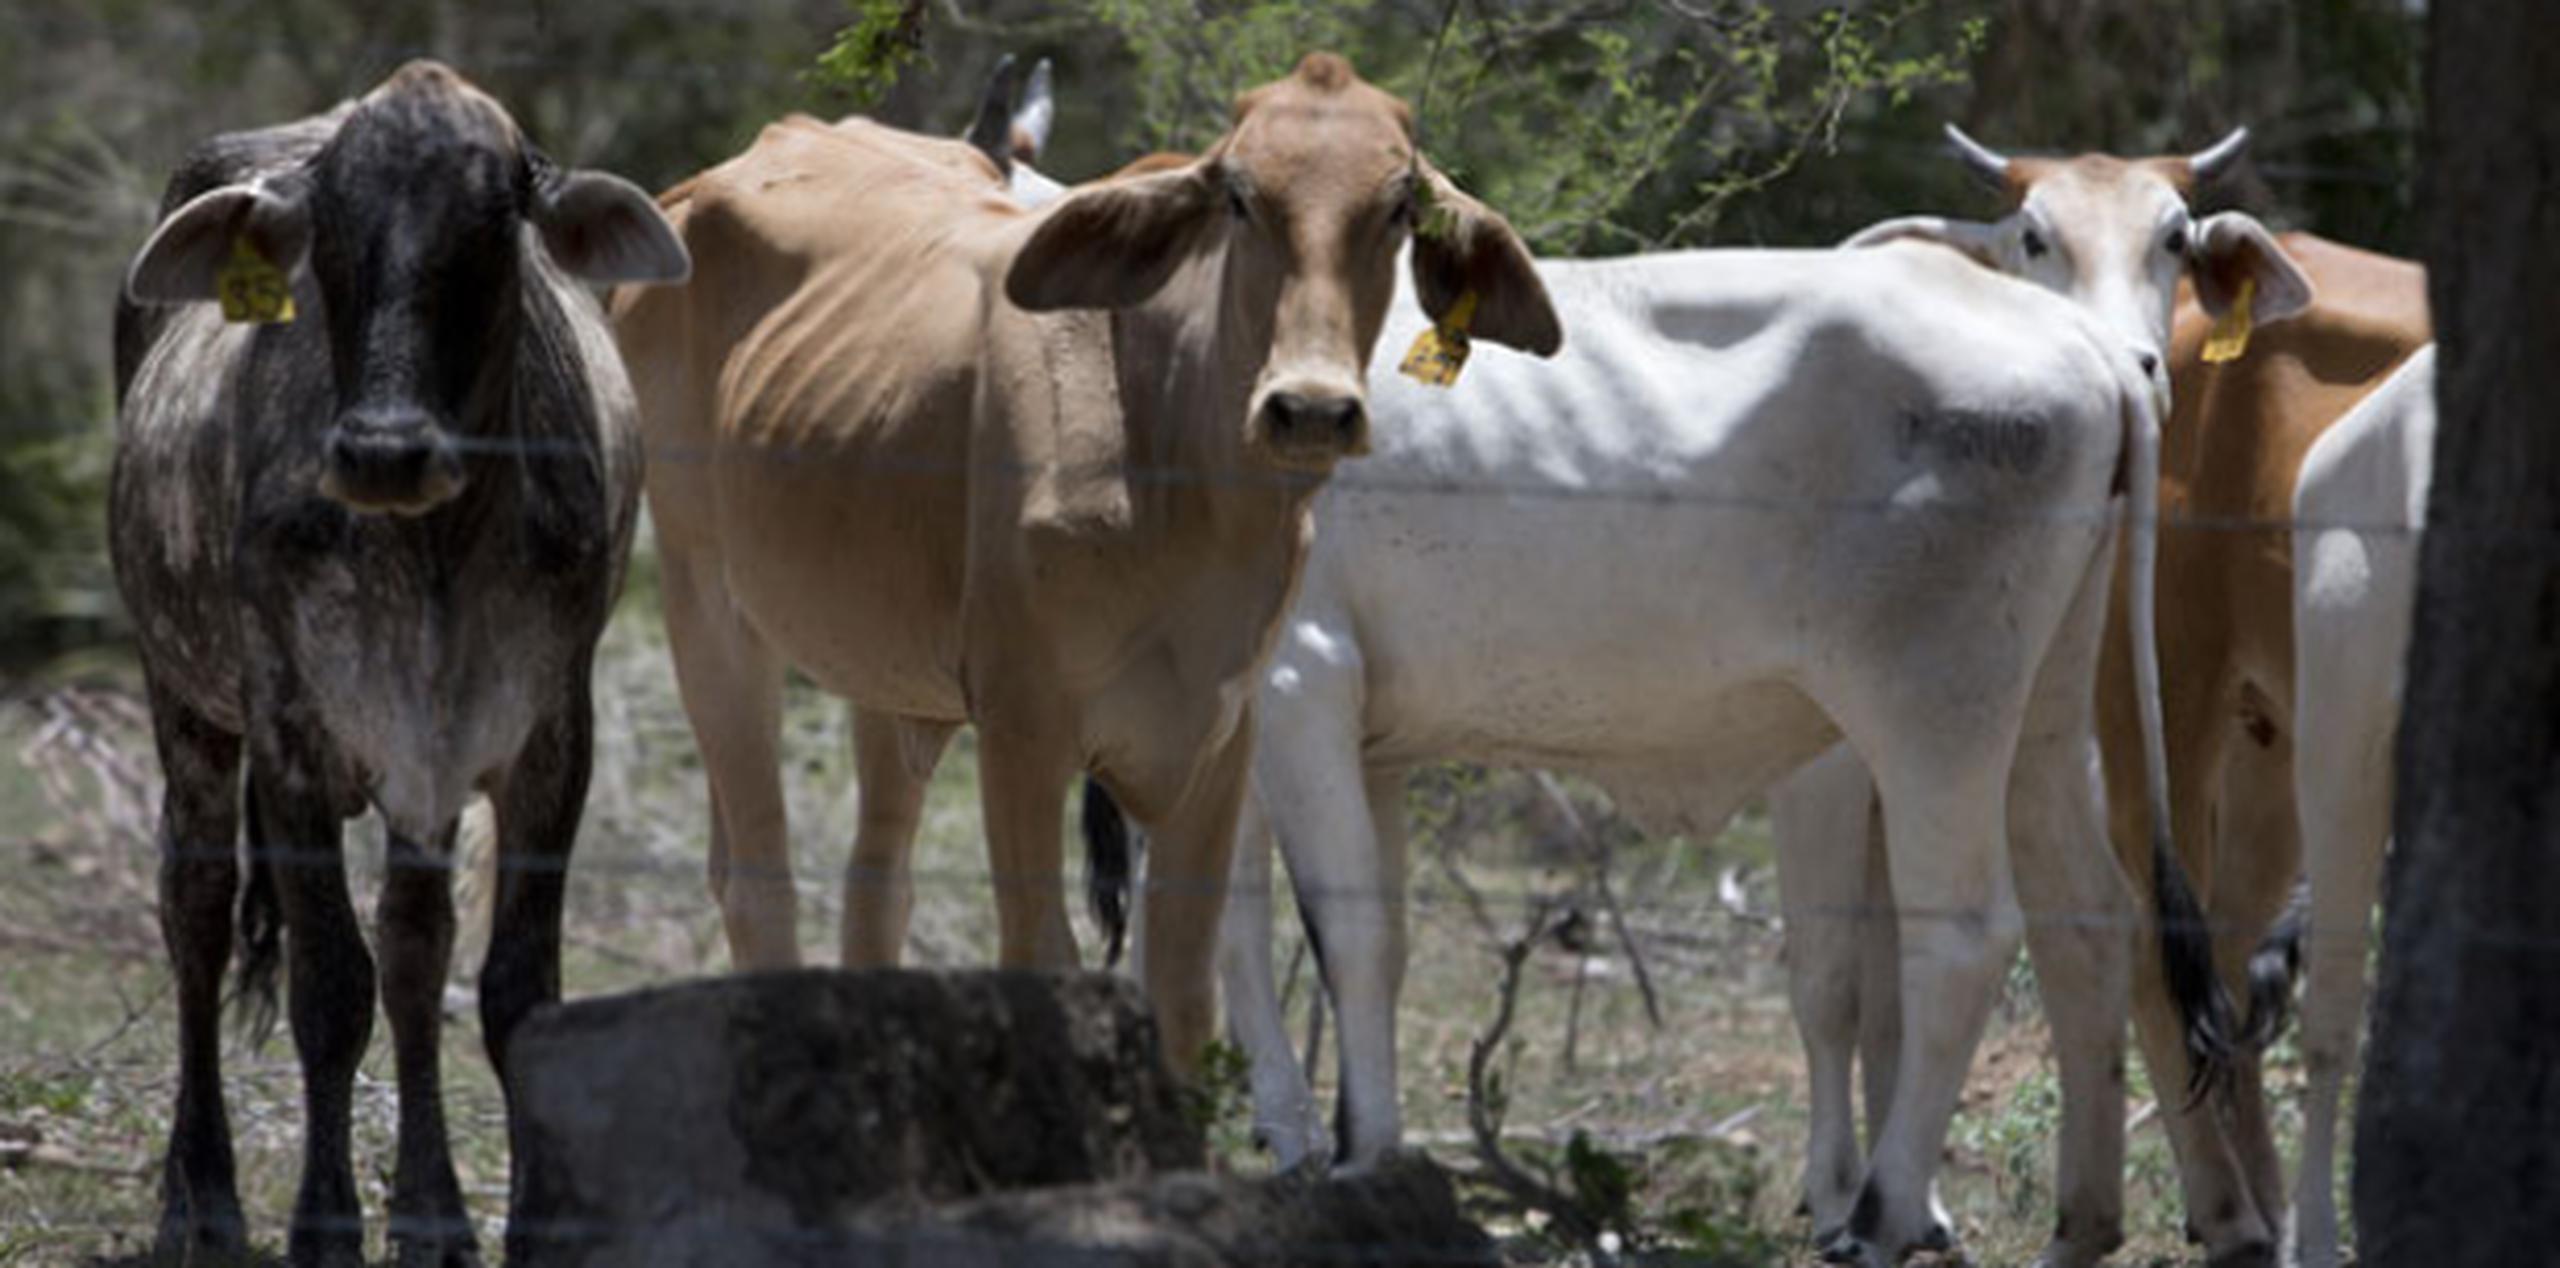 La falta de agua tiene desnutrido al ganado de varias fincas, al punto de que sus dueños las venden muy por debajo de su precio. (jorge.ramirez@gfrmedia.com)